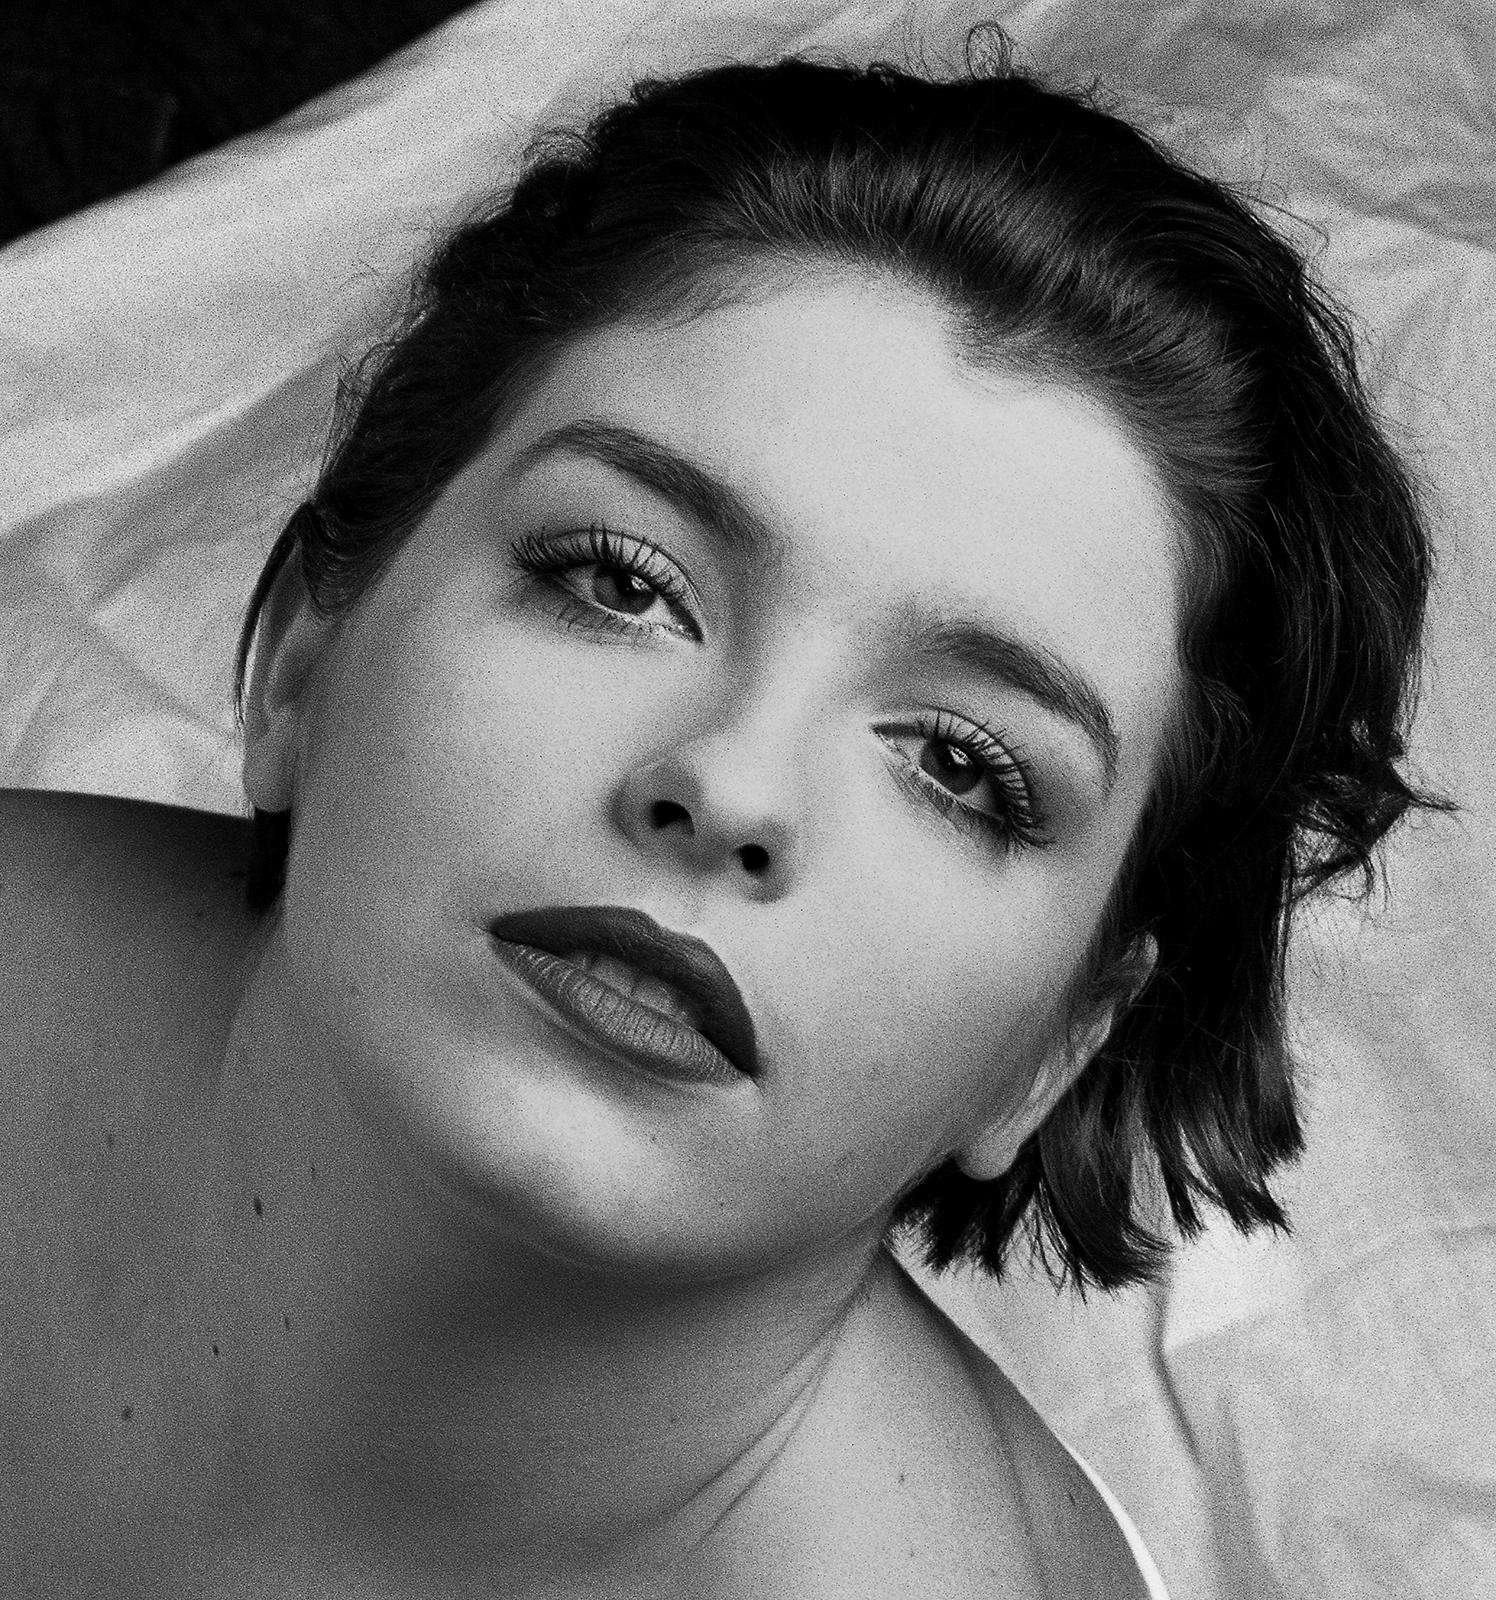 Semi Nude photo, Contemporary, Figurative, Sensual Black White - Morgane 2 - Photograph by Ian Sanderson